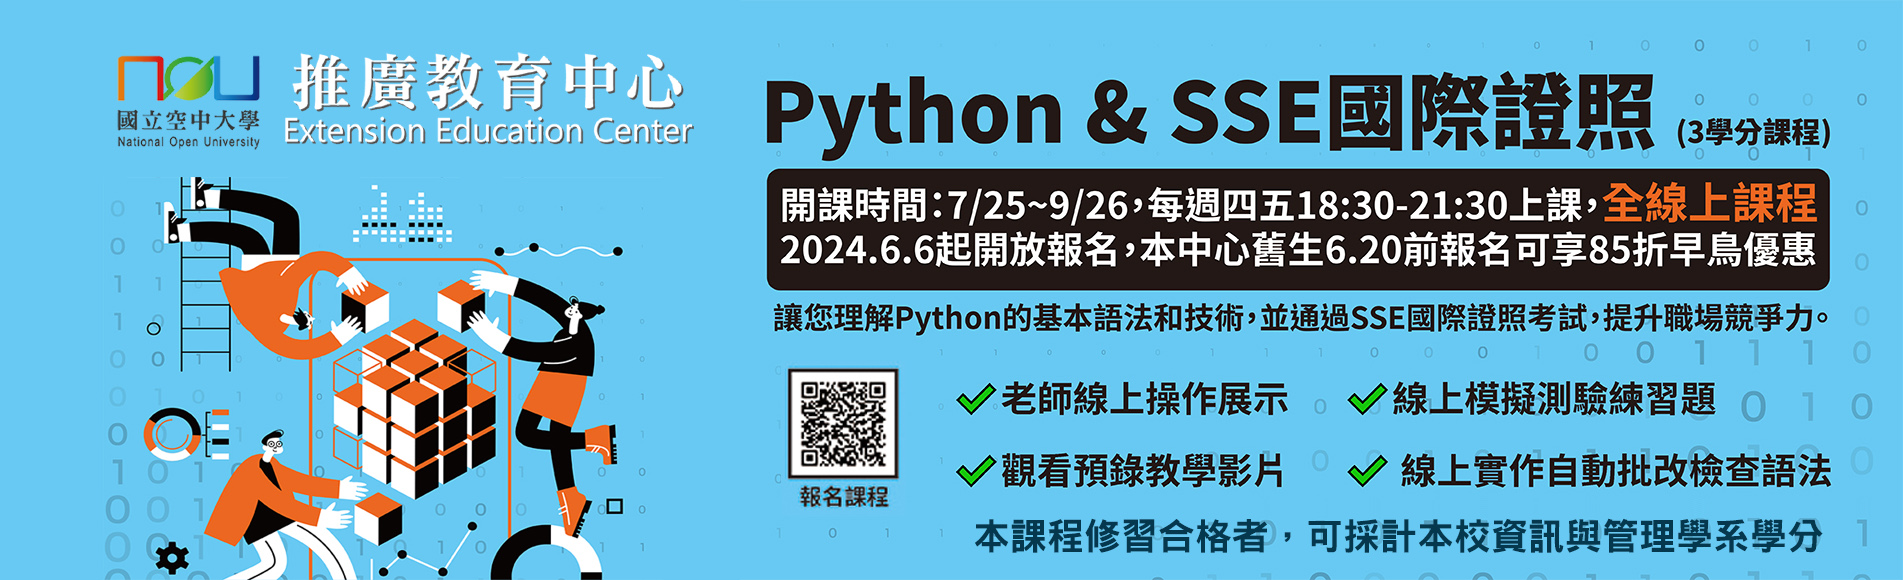 推廣教育中心Python&SSE國際證照班招生